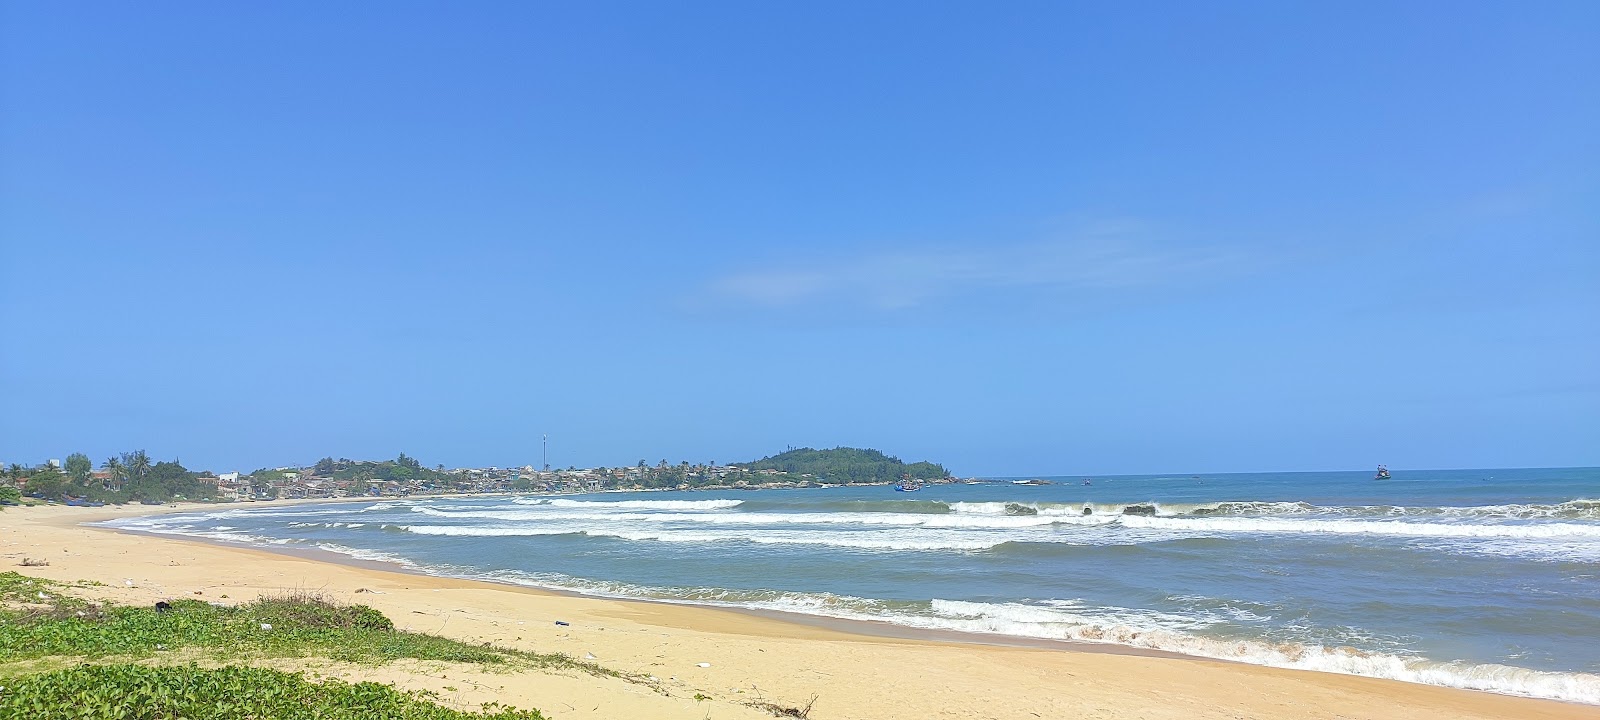 Zdjęcie Xuan Thanh Beach z powierzchnią jasny piasek